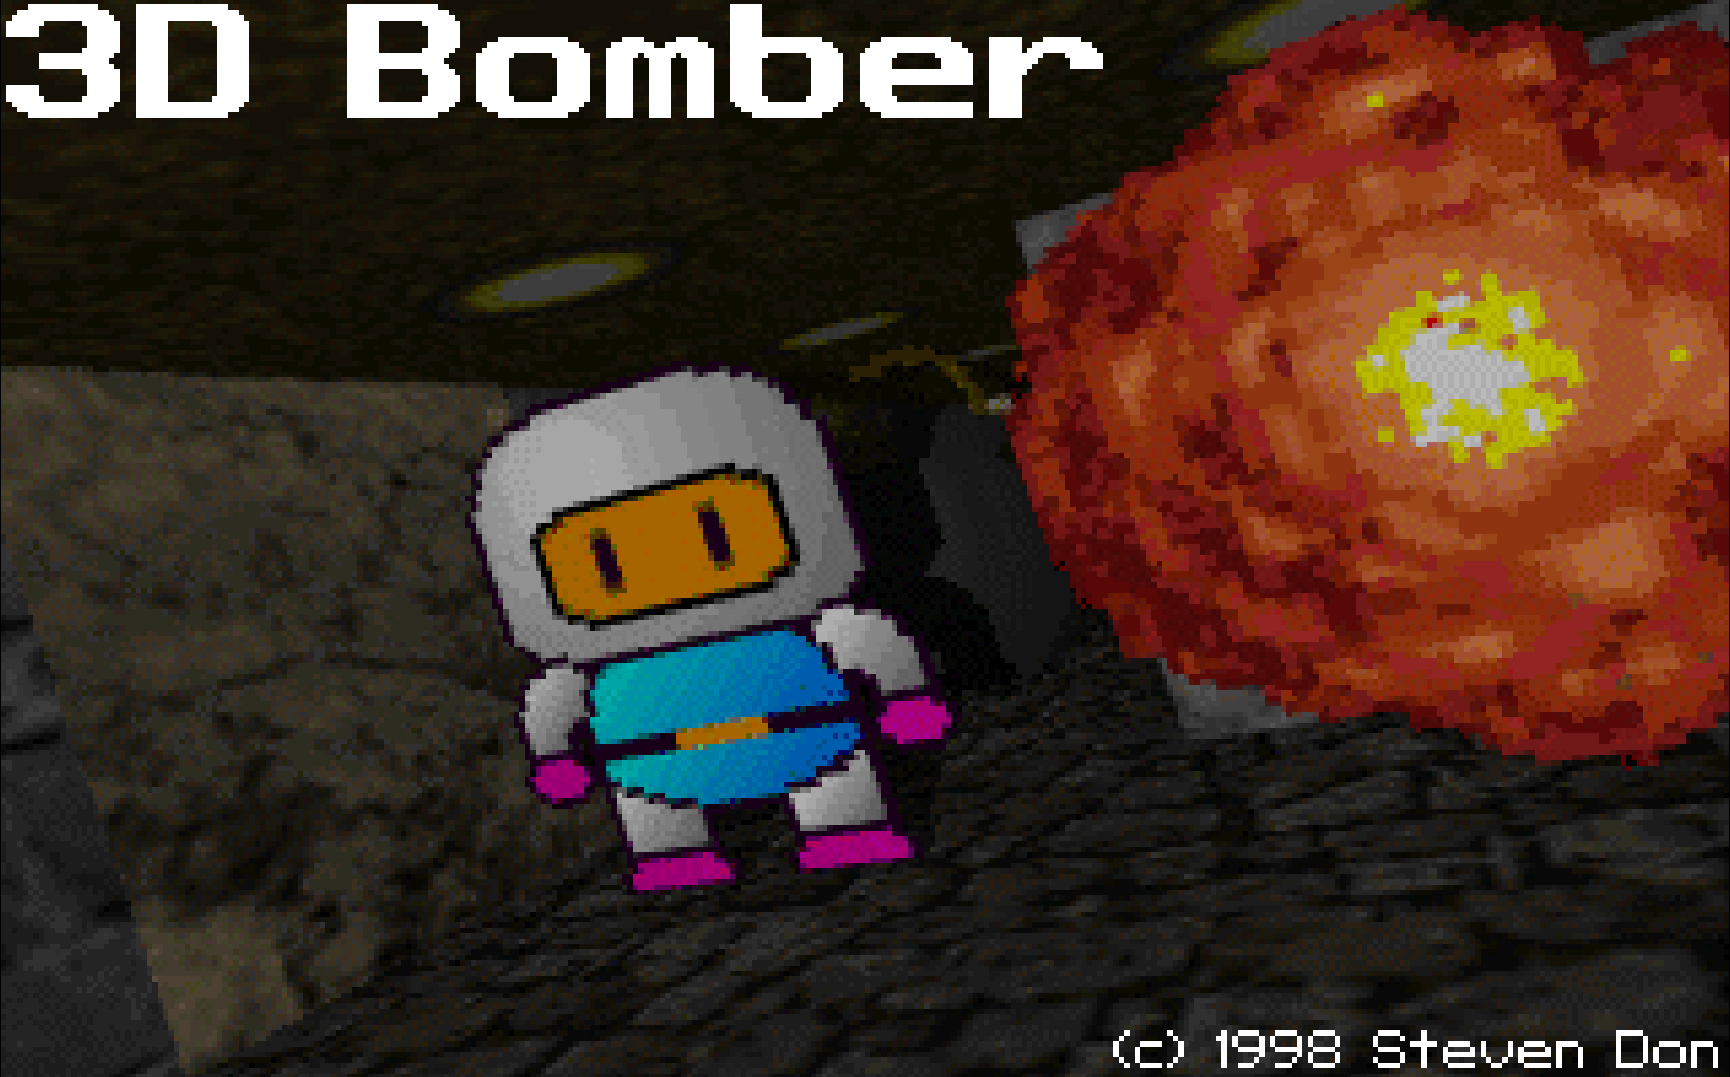 3d bomber